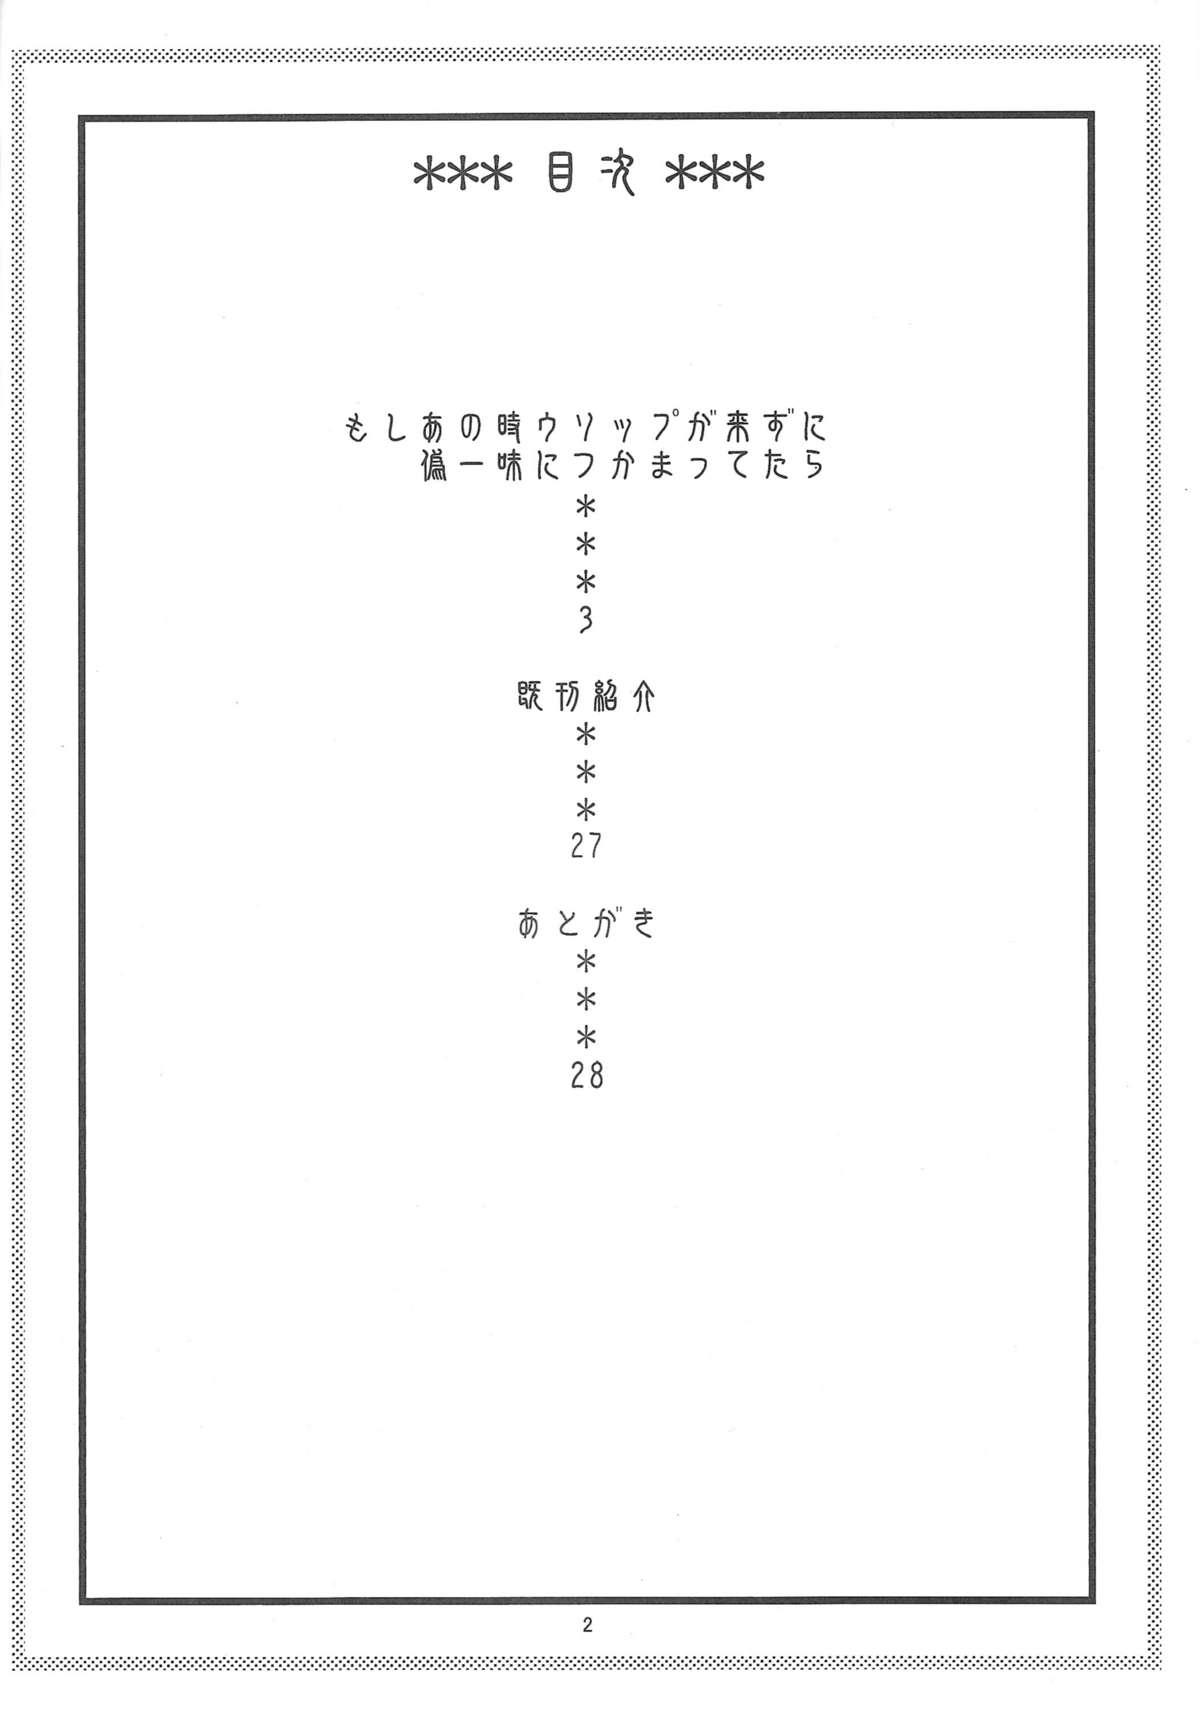 Infiel Nami no Ura Koukai Nisshi 6 - One piece Rabuda - Page 3